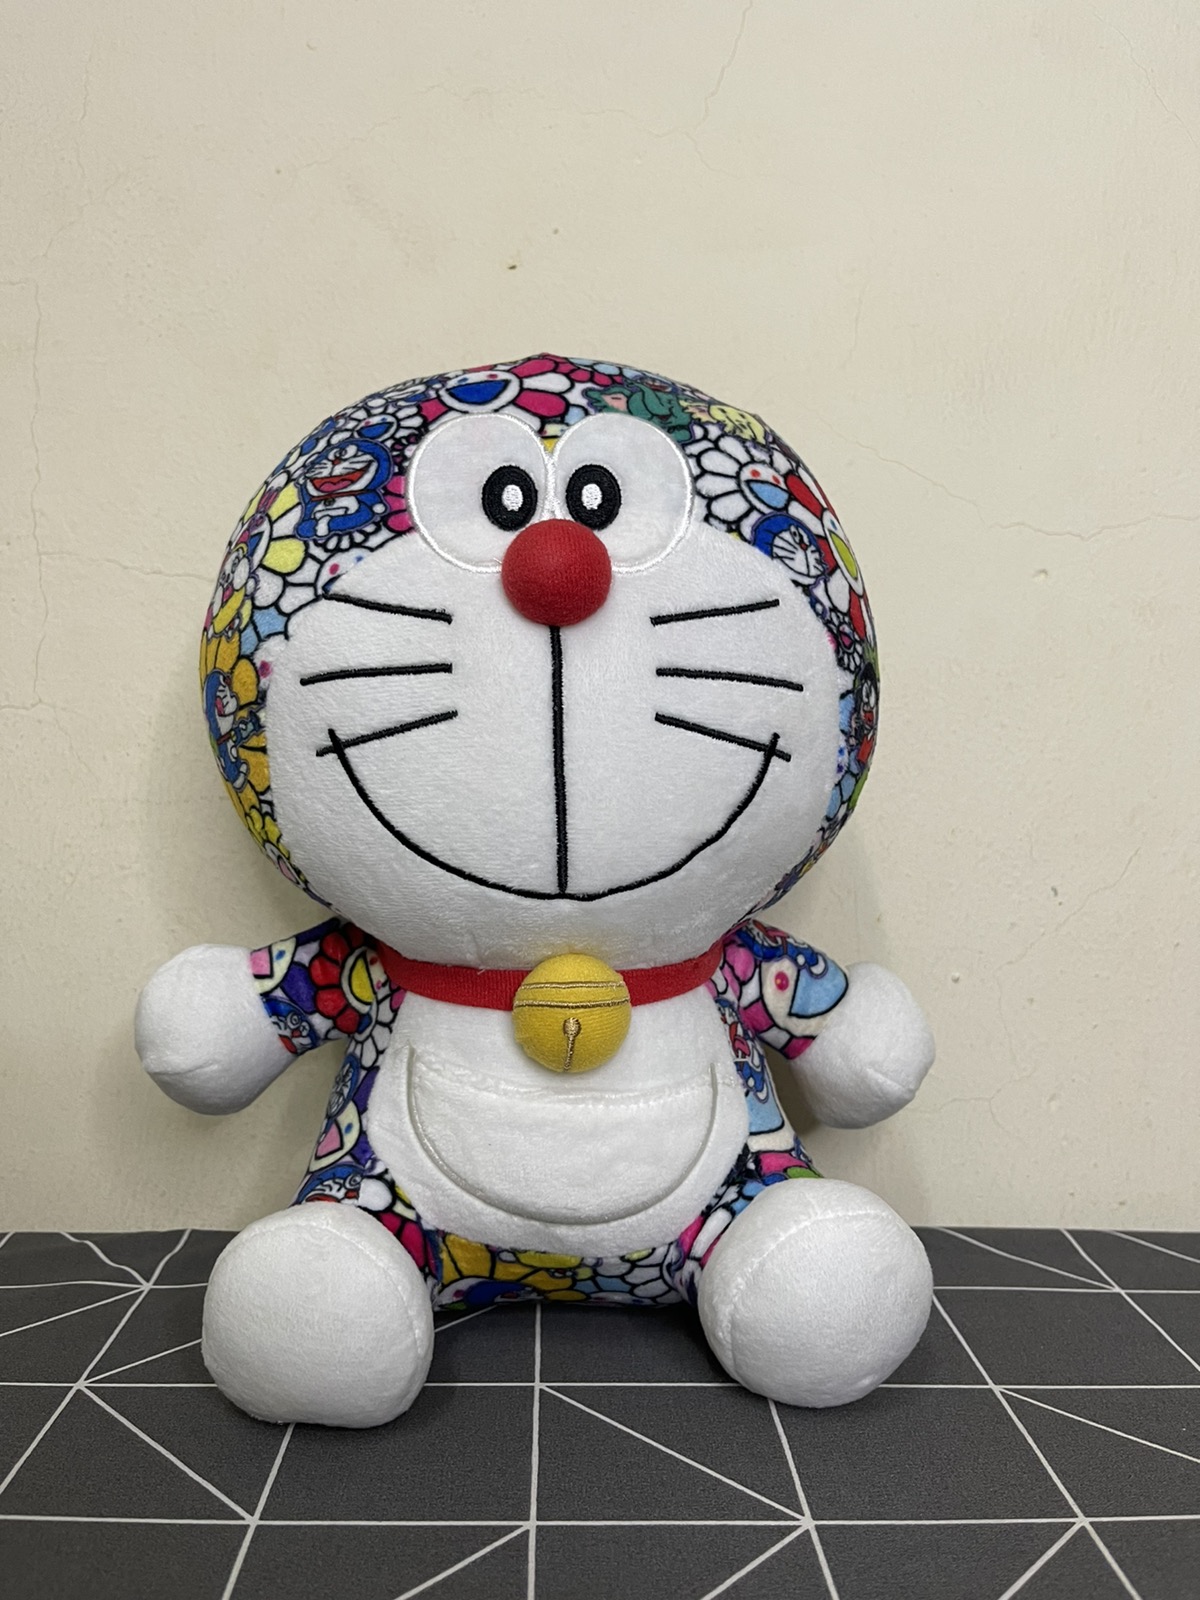 Uniqlo - New Takashi Murakami Doraemon Toys Limited Edition - 1